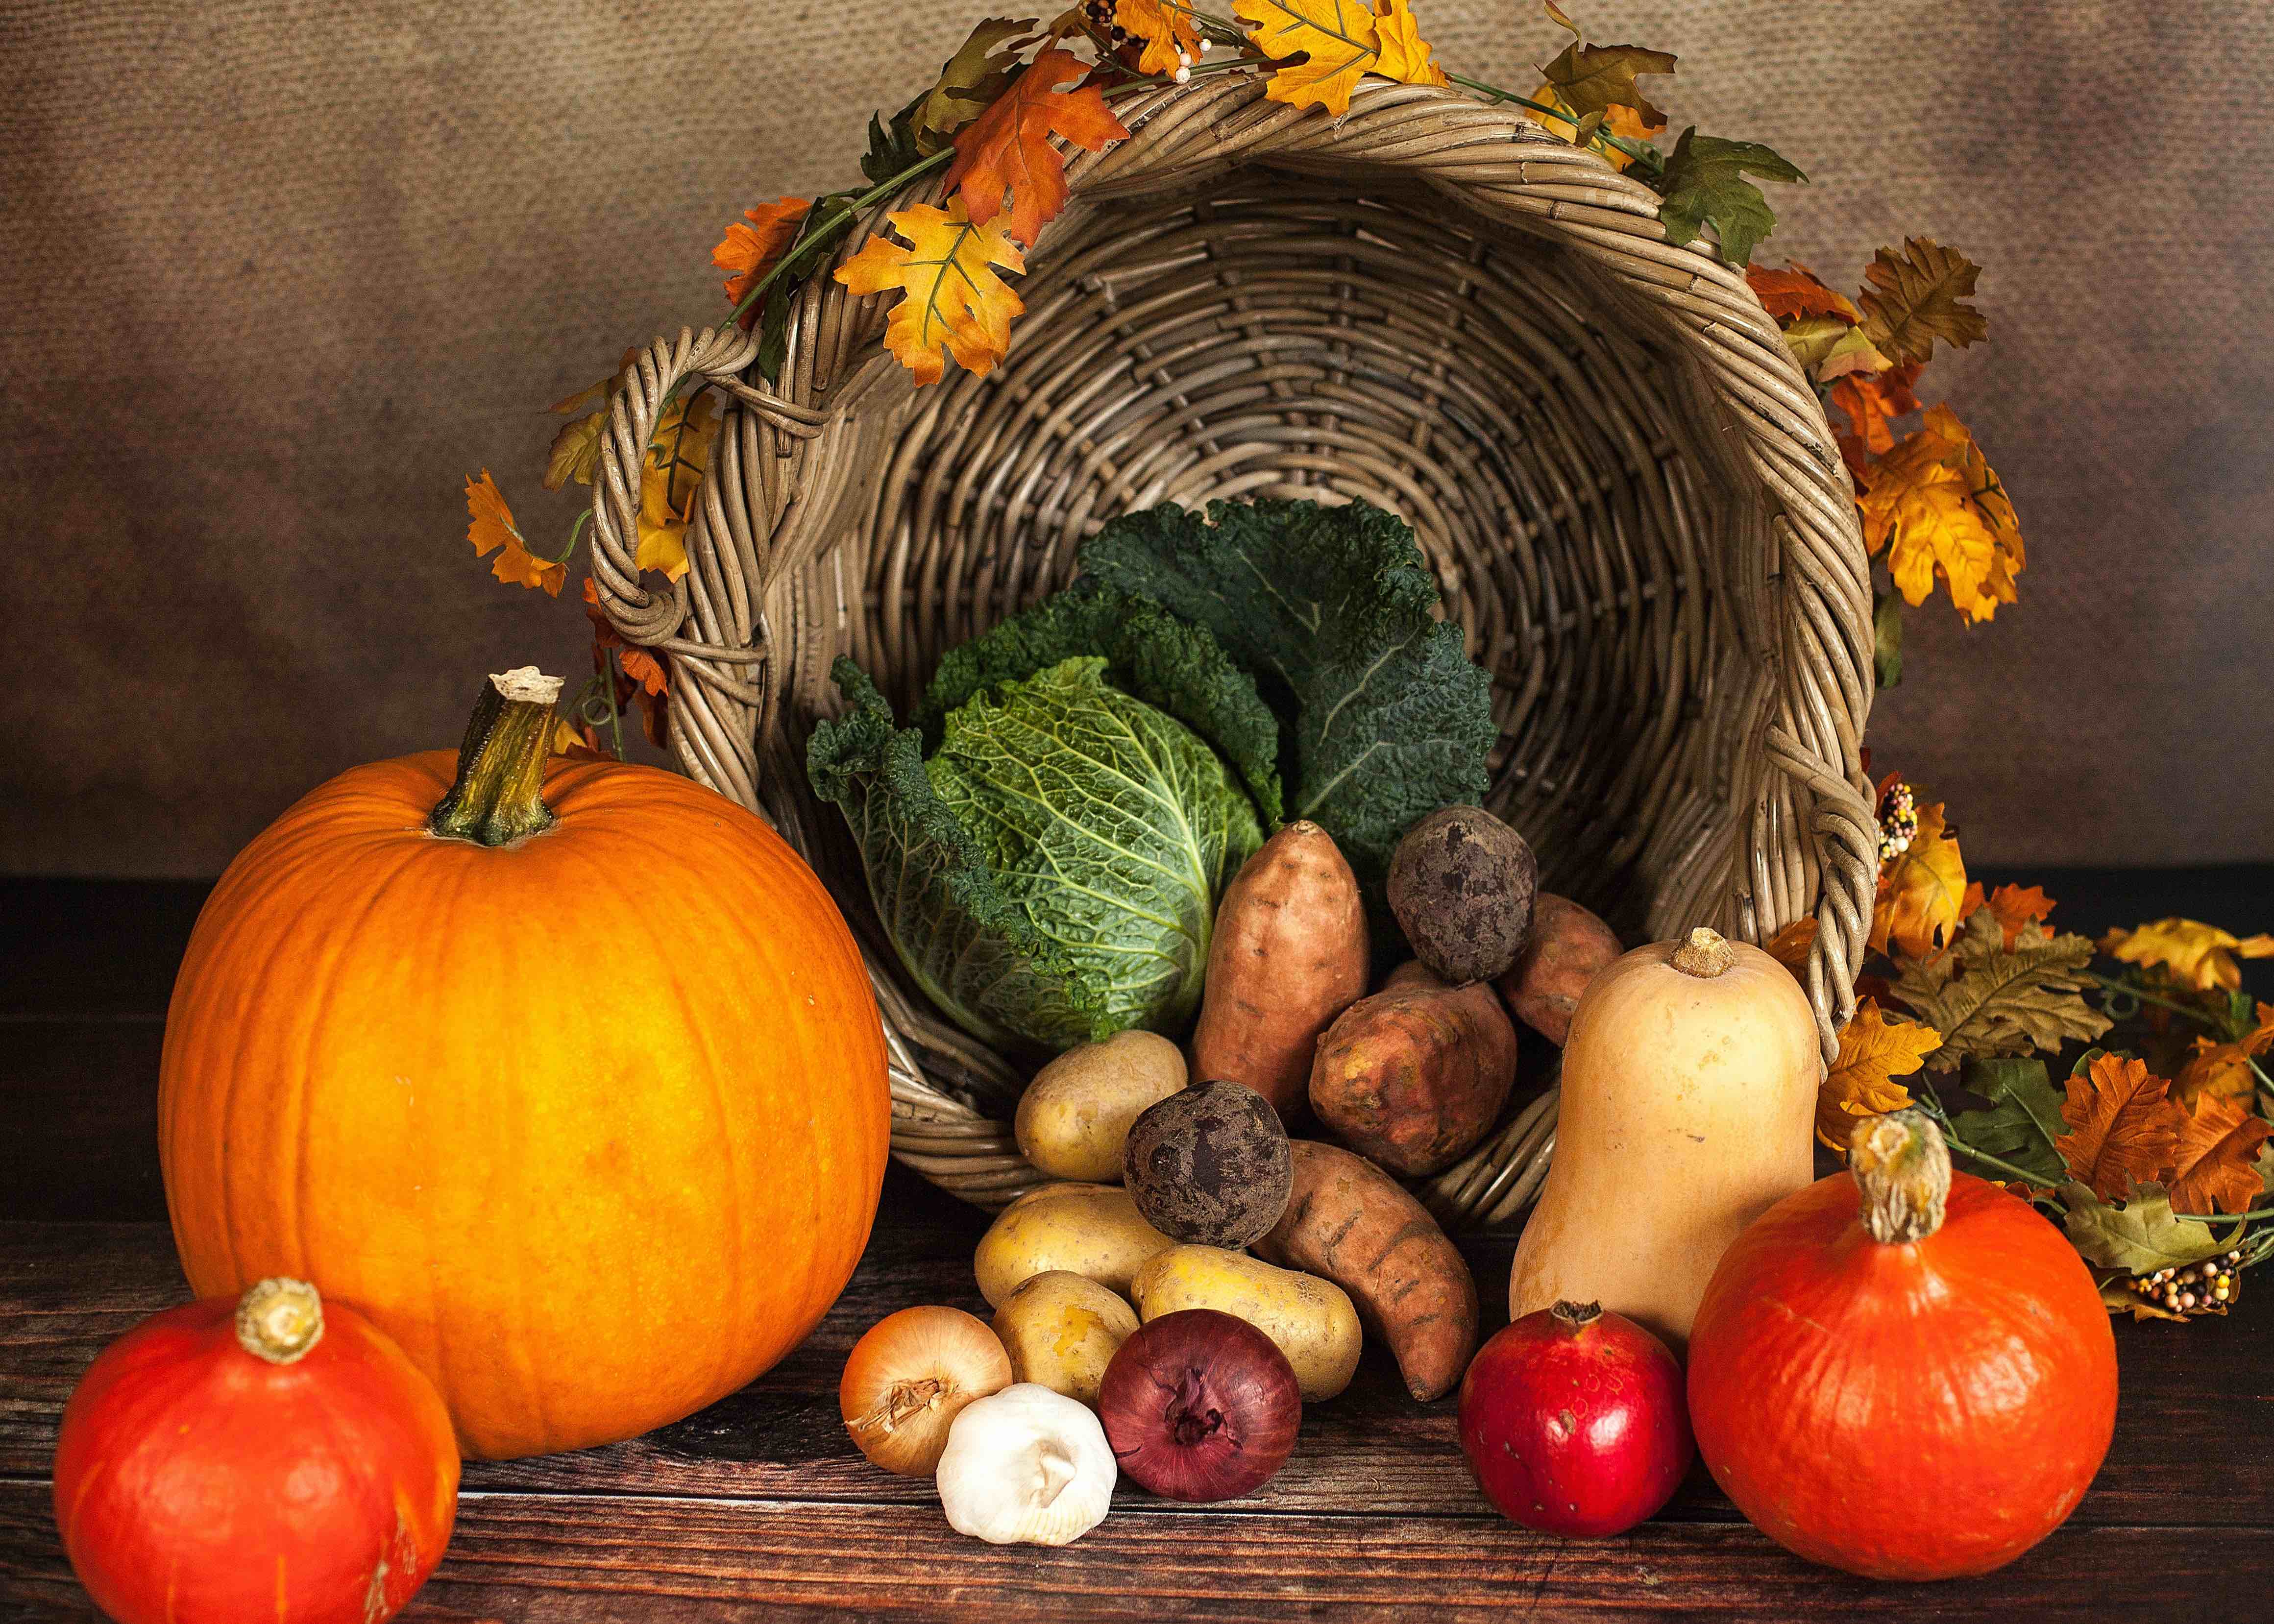 L’orto in autunno: frutta e verdura della stagione